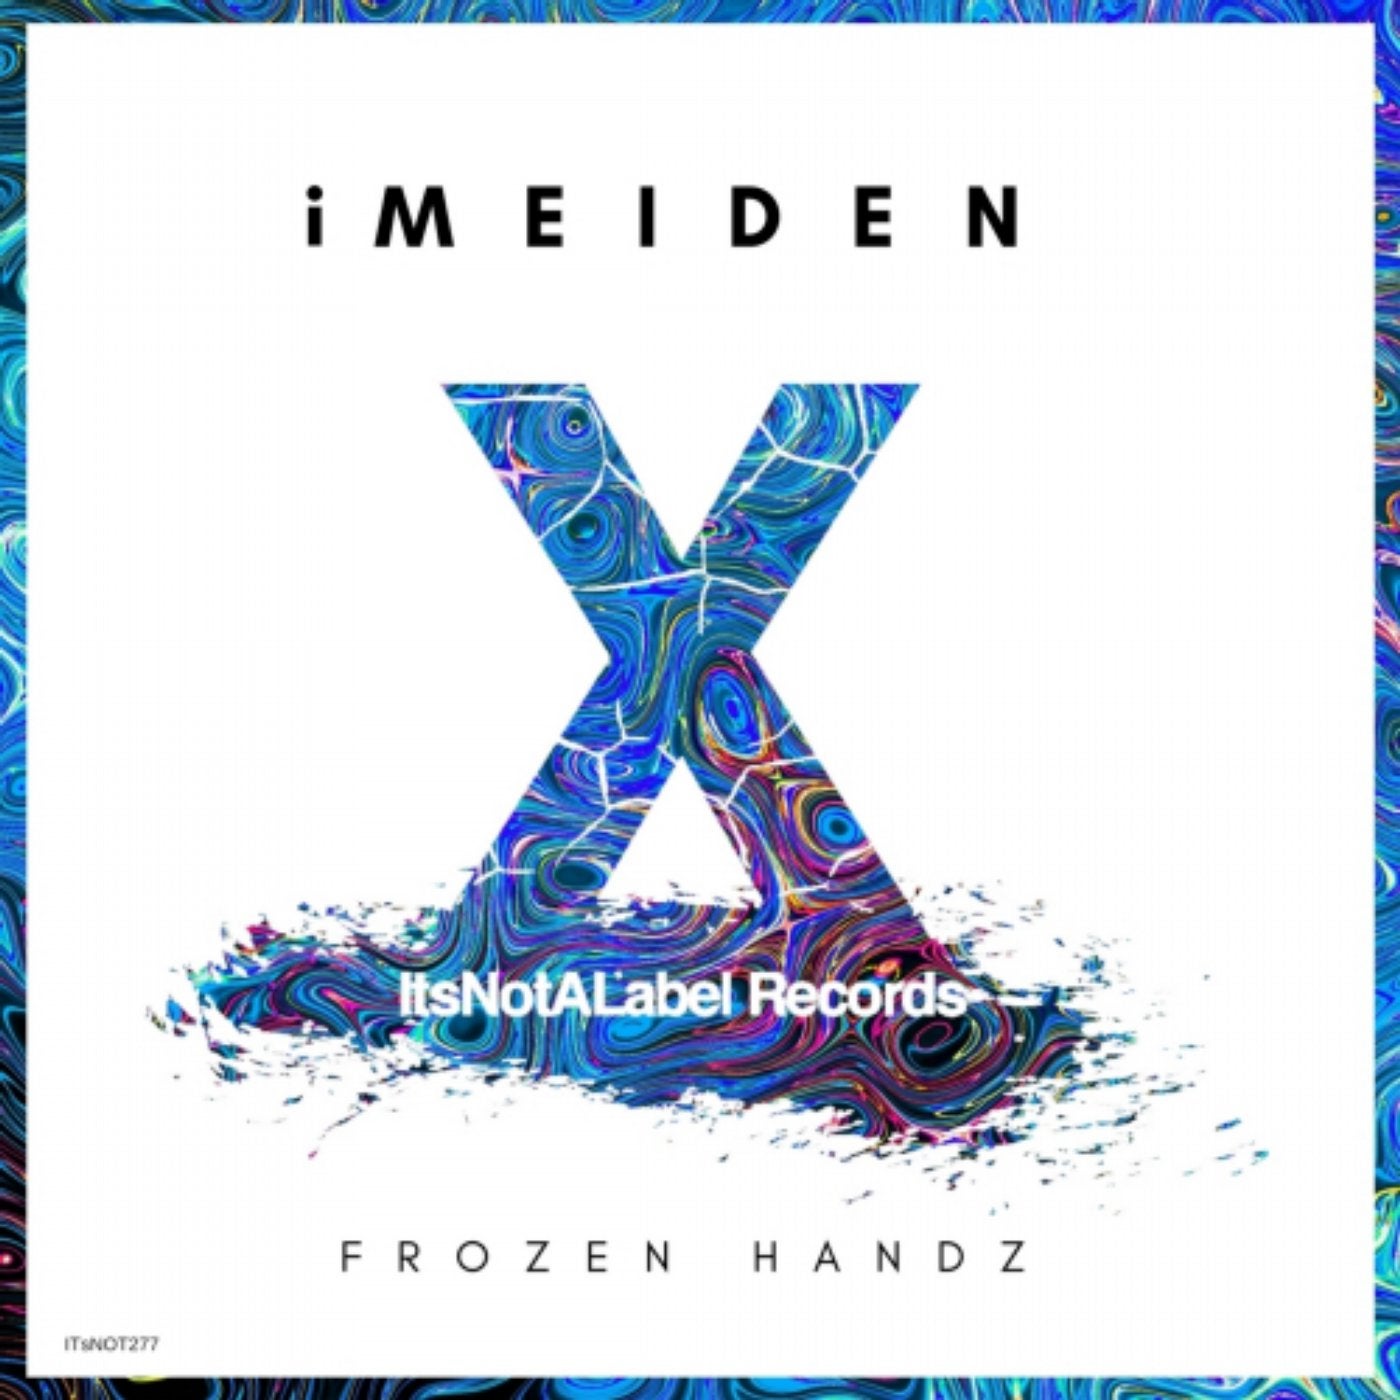 Frozen Handz